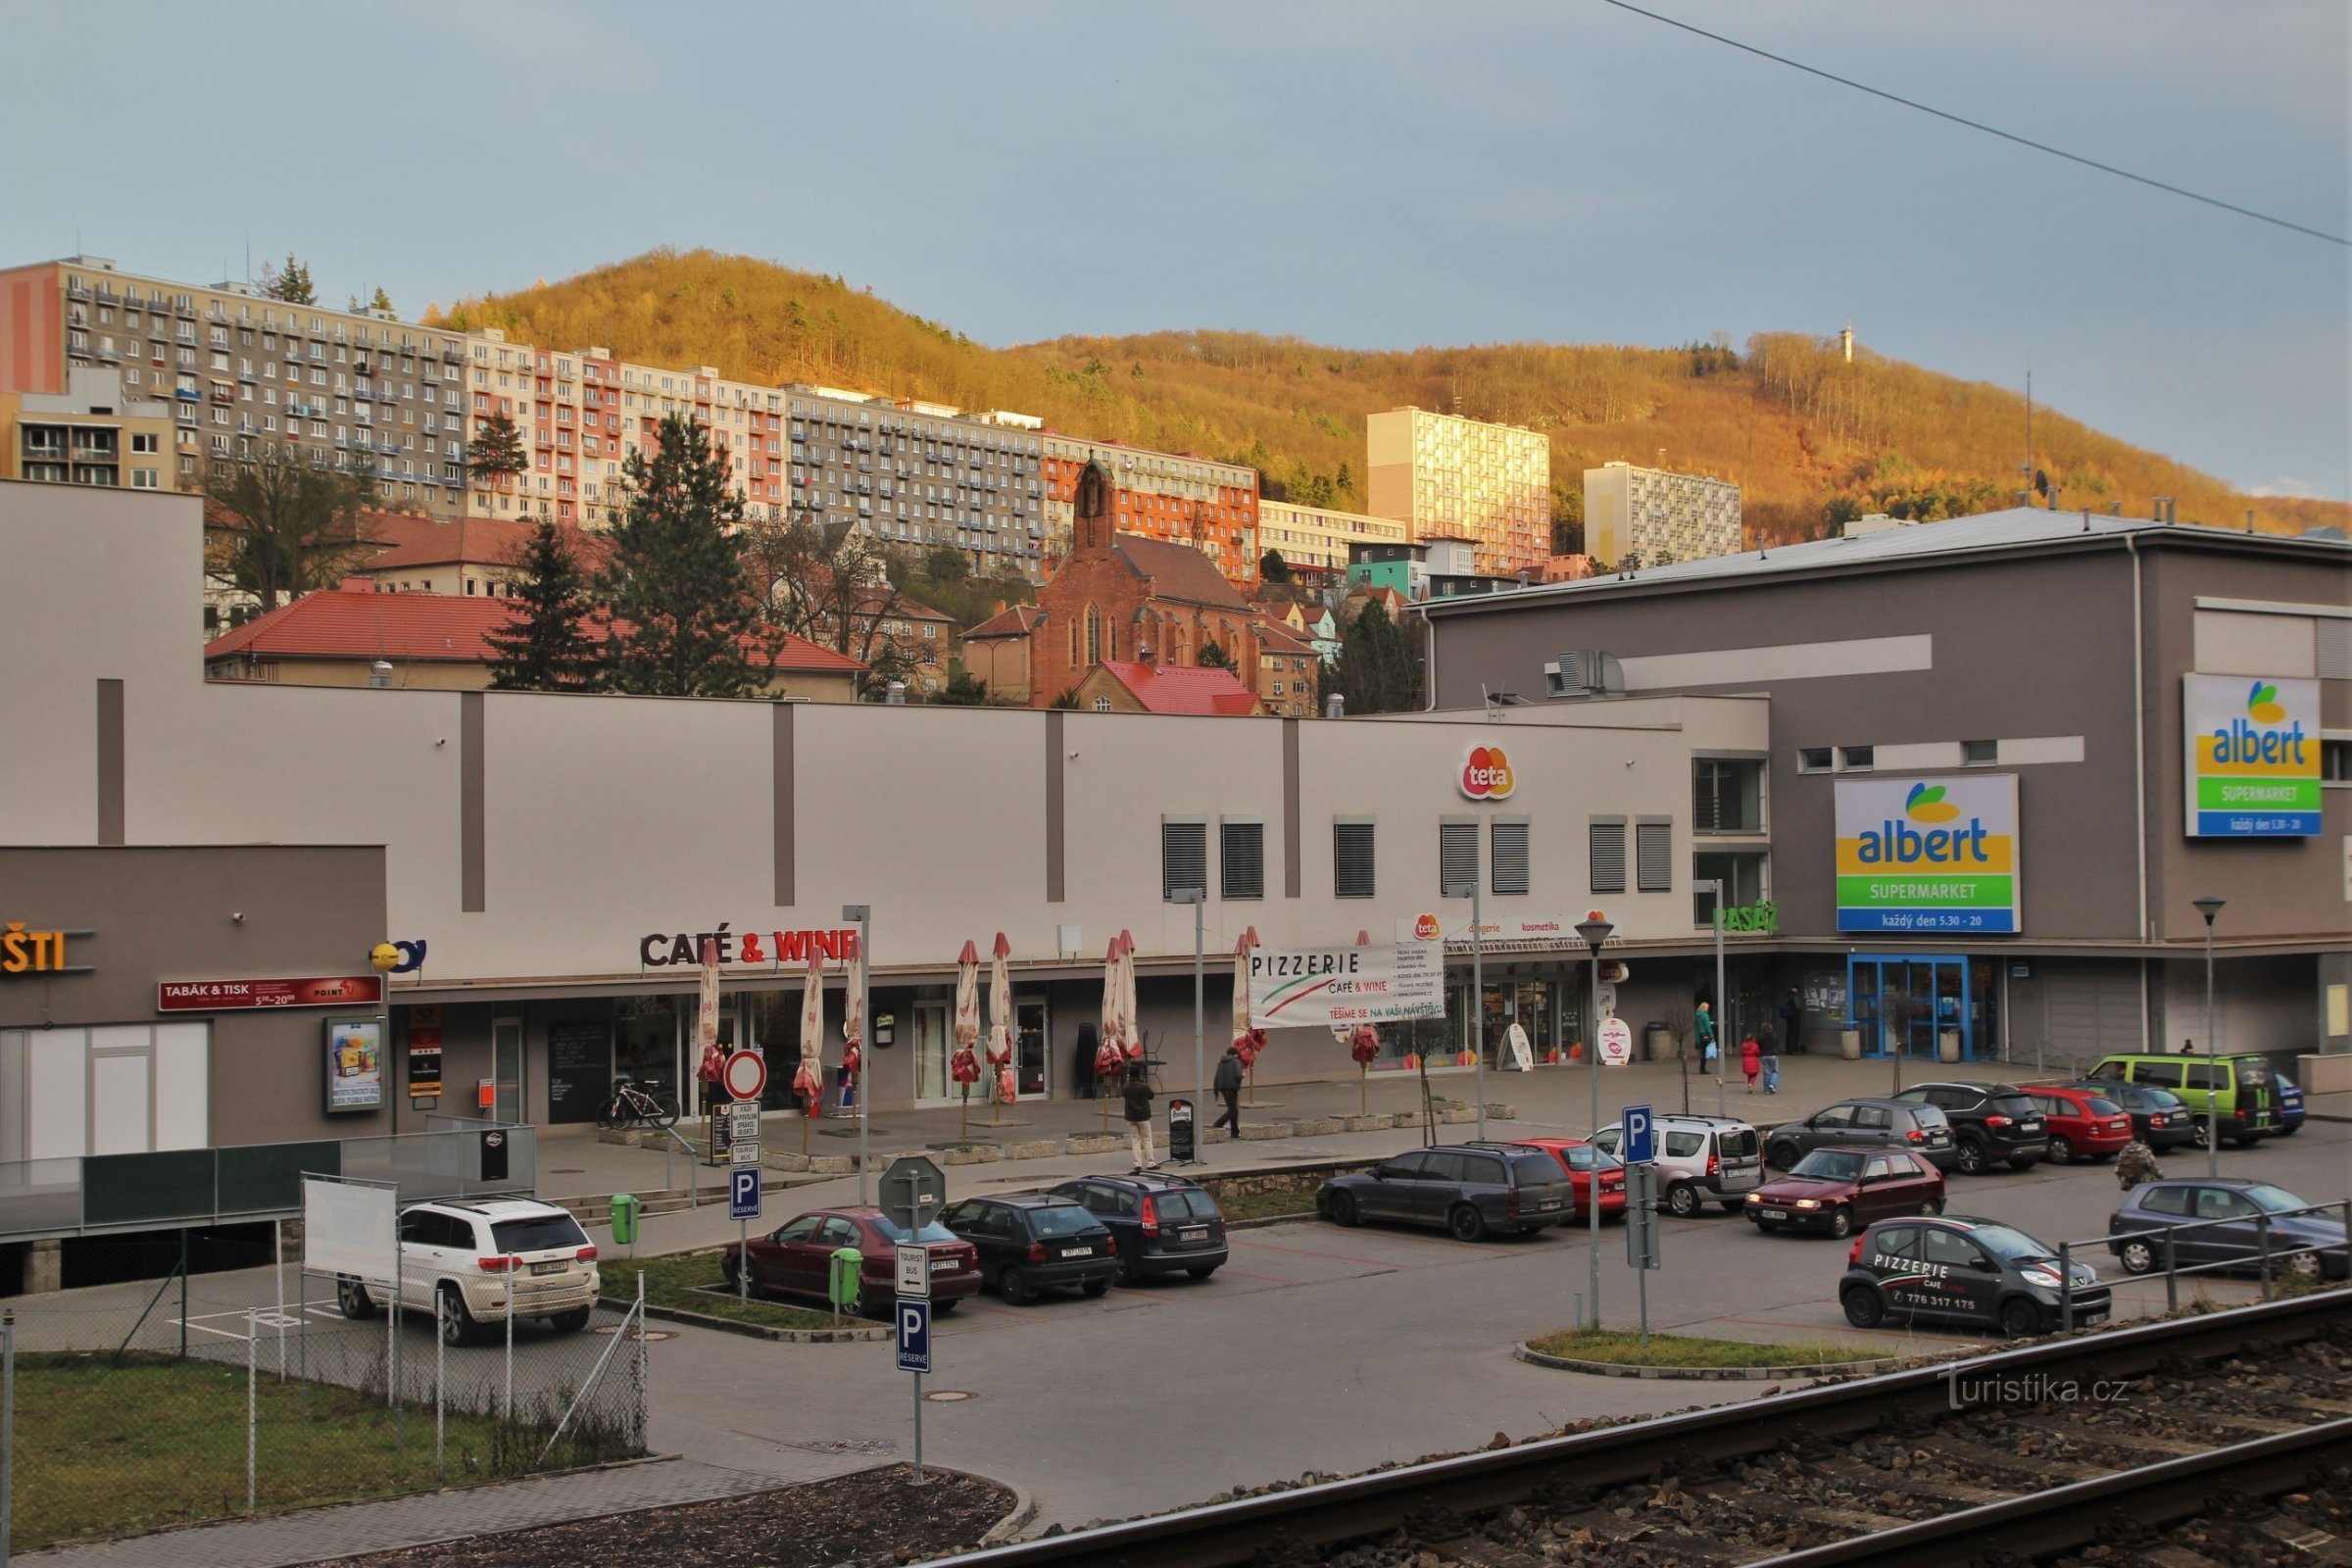 Vue des bâtiments Na Horce depuis le centre commercial de la rue Nádražní